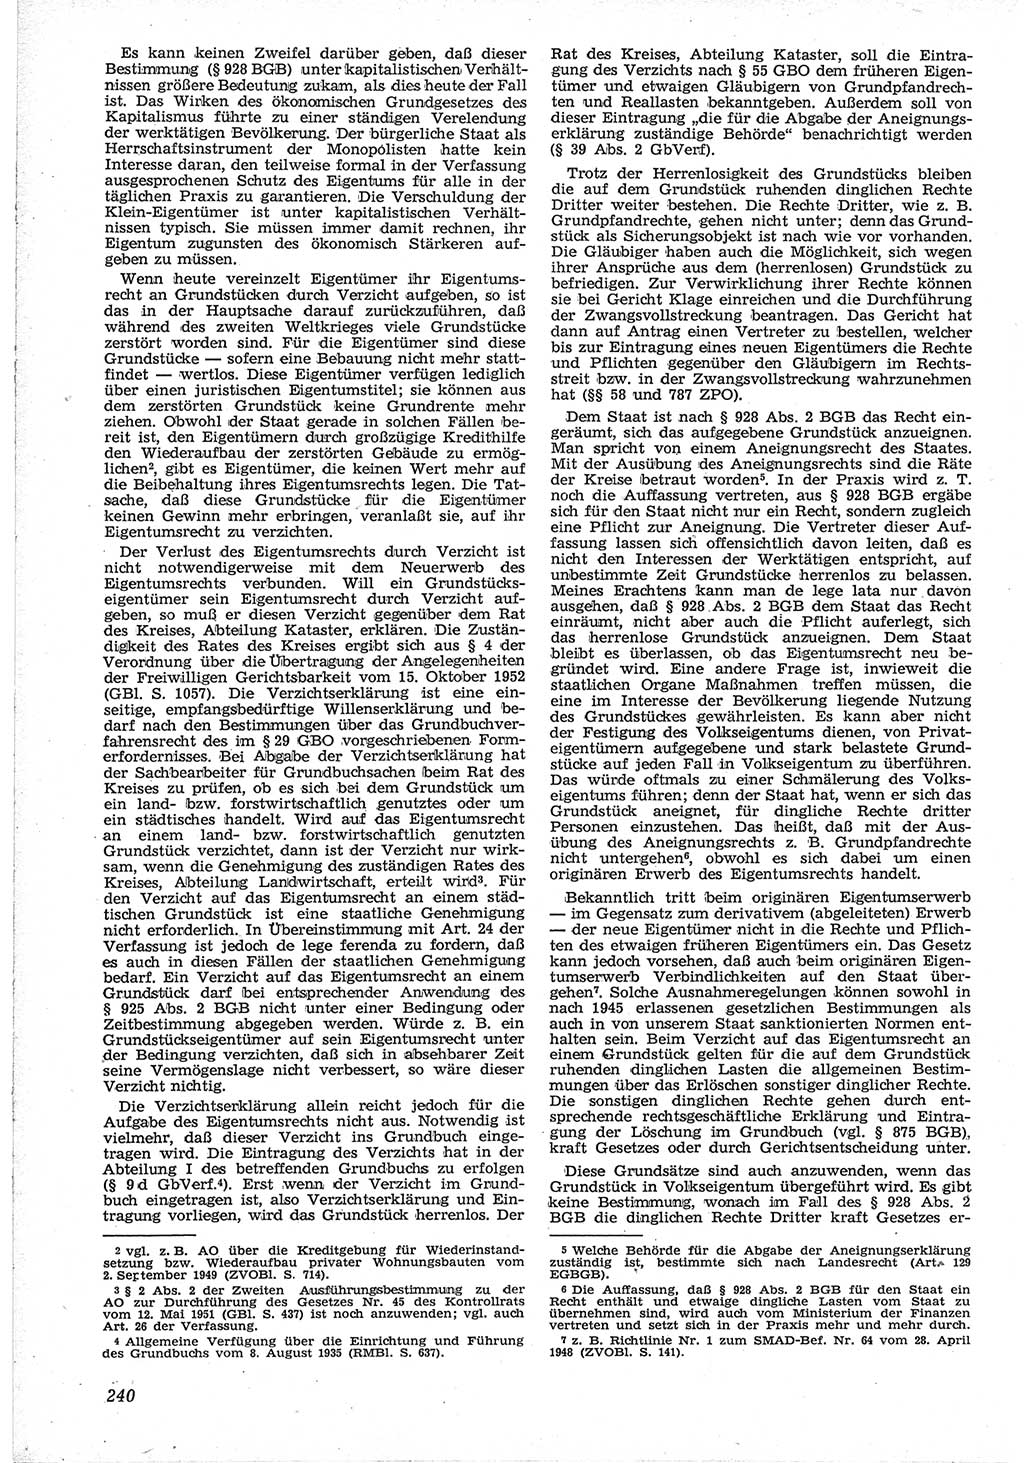 Neue Justiz (NJ), Zeitschrift für Recht und Rechtswissenschaft [Deutsche Demokratische Republik (DDR)], 12. Jahrgang 1958, Seite 240 (NJ DDR 1958, S. 240)